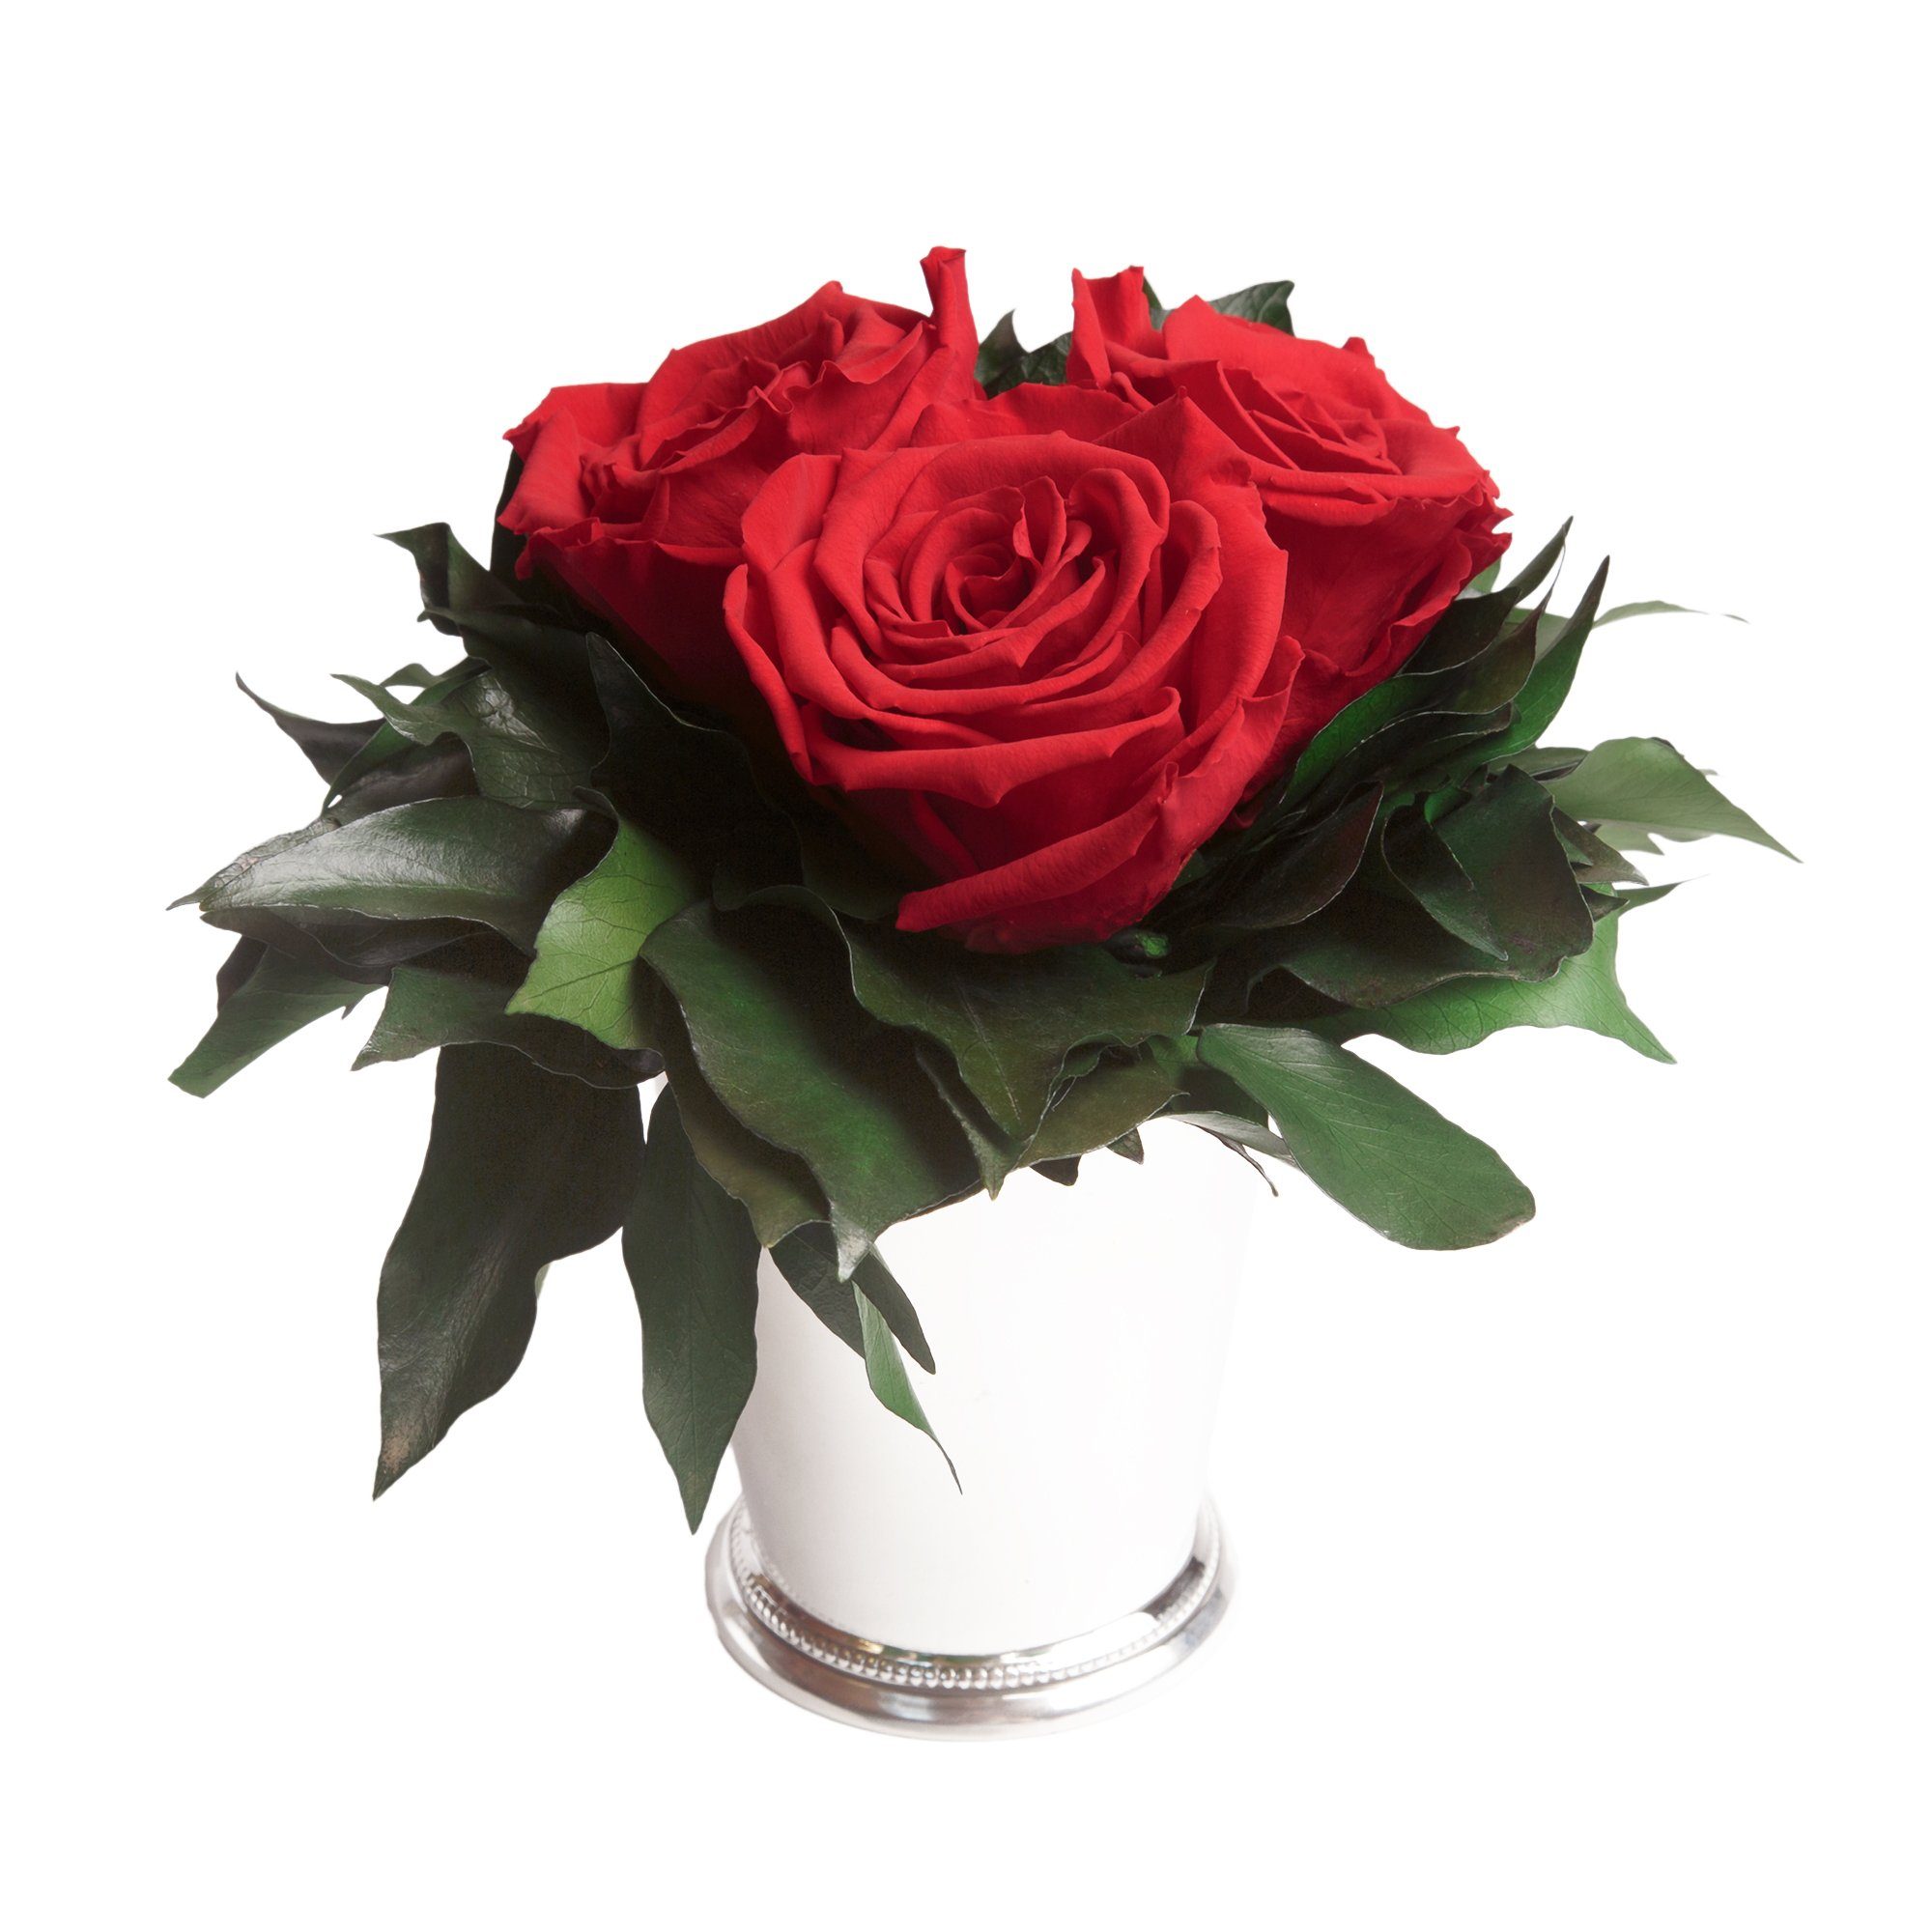 Kunstorchidee 3 Infinity Rosen bis zu Rose cm, Höhe SCHULZ Heidelberg, Wohnzimmer haltbar Vase Rot Blumenstrauß Rose, Jahre silberfarbene ROSEMARIE 3 15 Deko